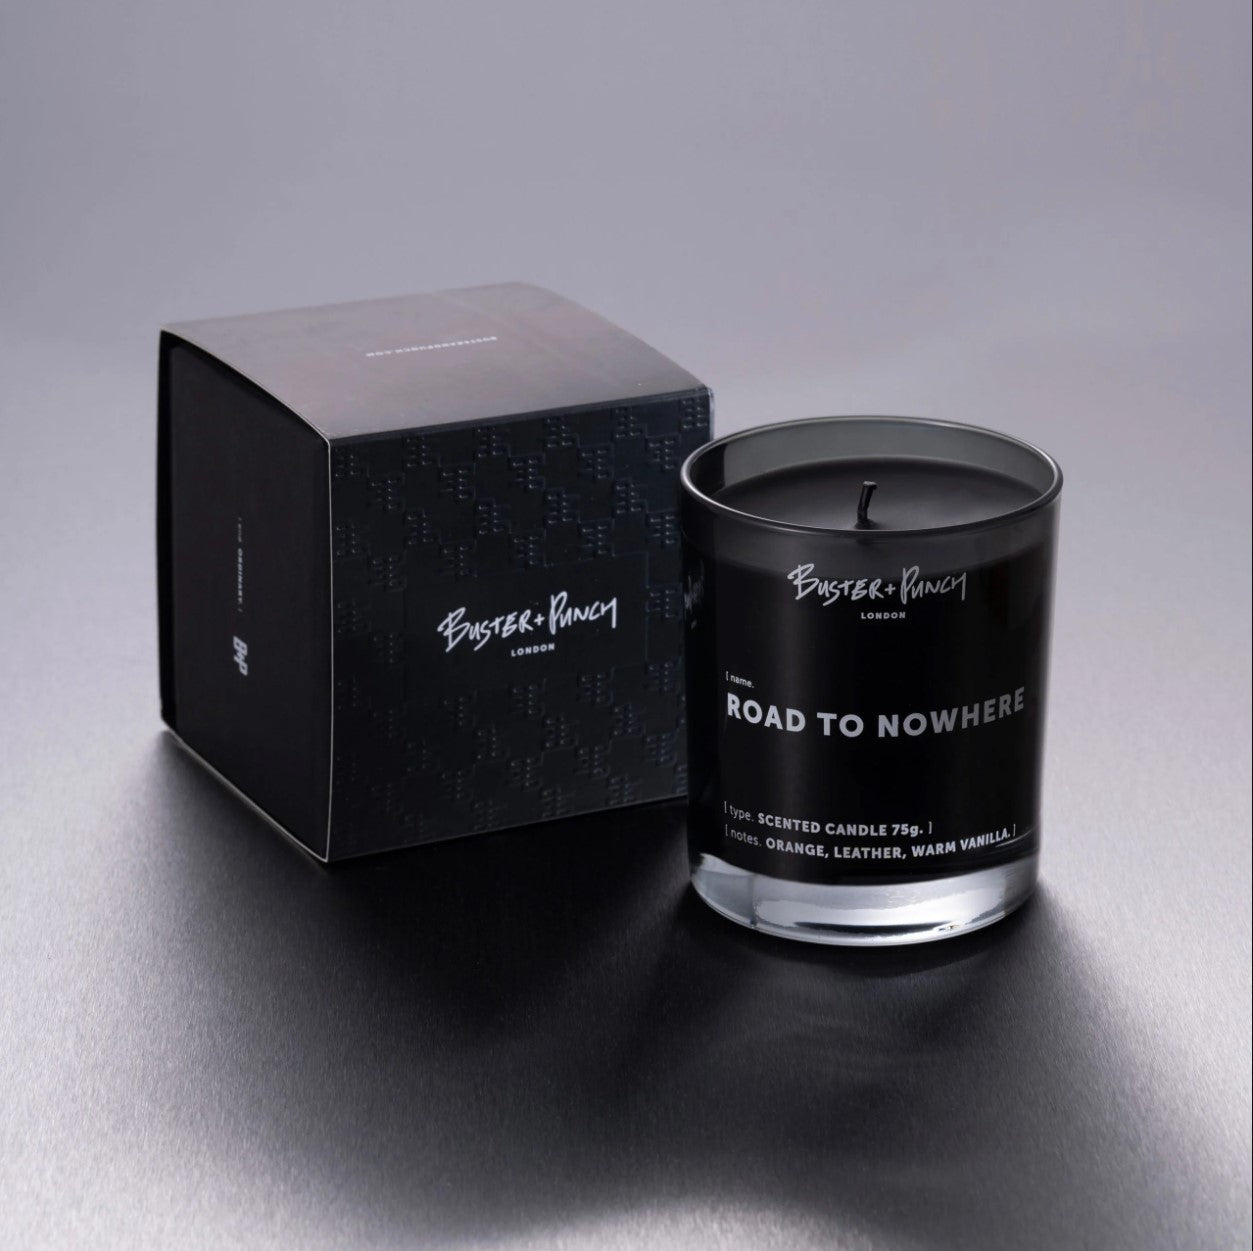 Æske indeholdende duftlys af sort voks i røgfarvet glas, på grå baggrund.